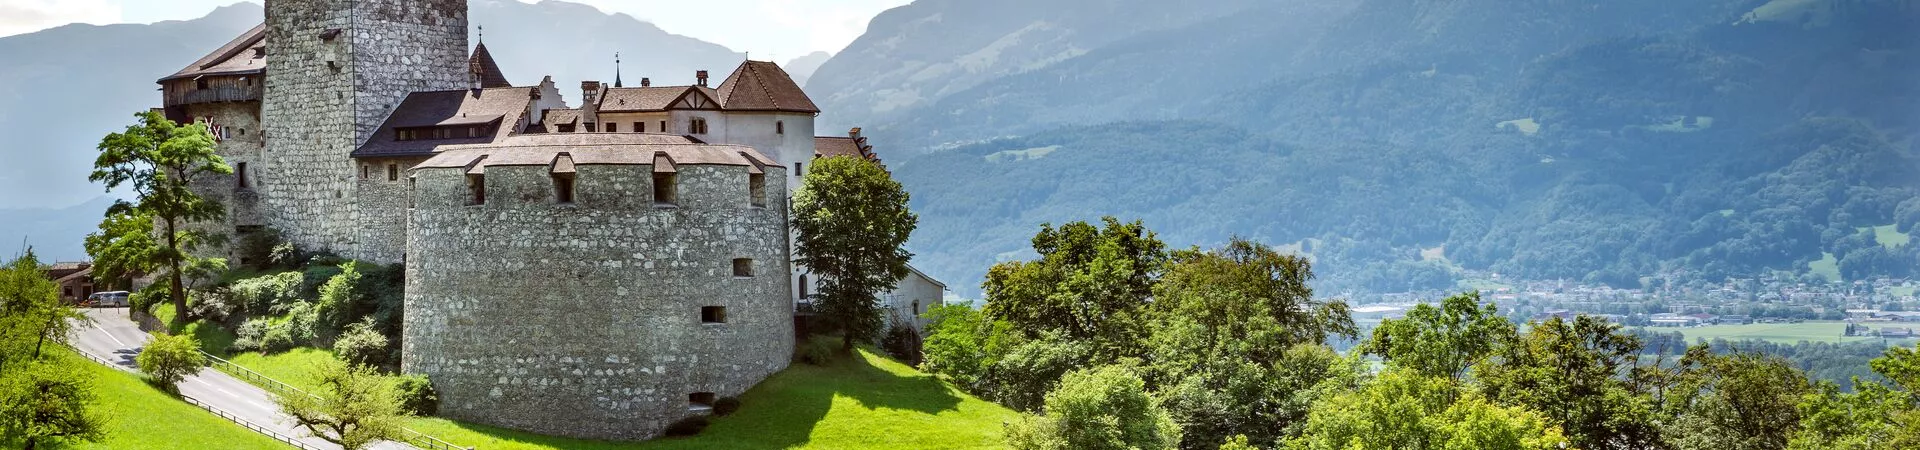 Large Medieval Castle In Vaduz, Liechtenstein 637326370